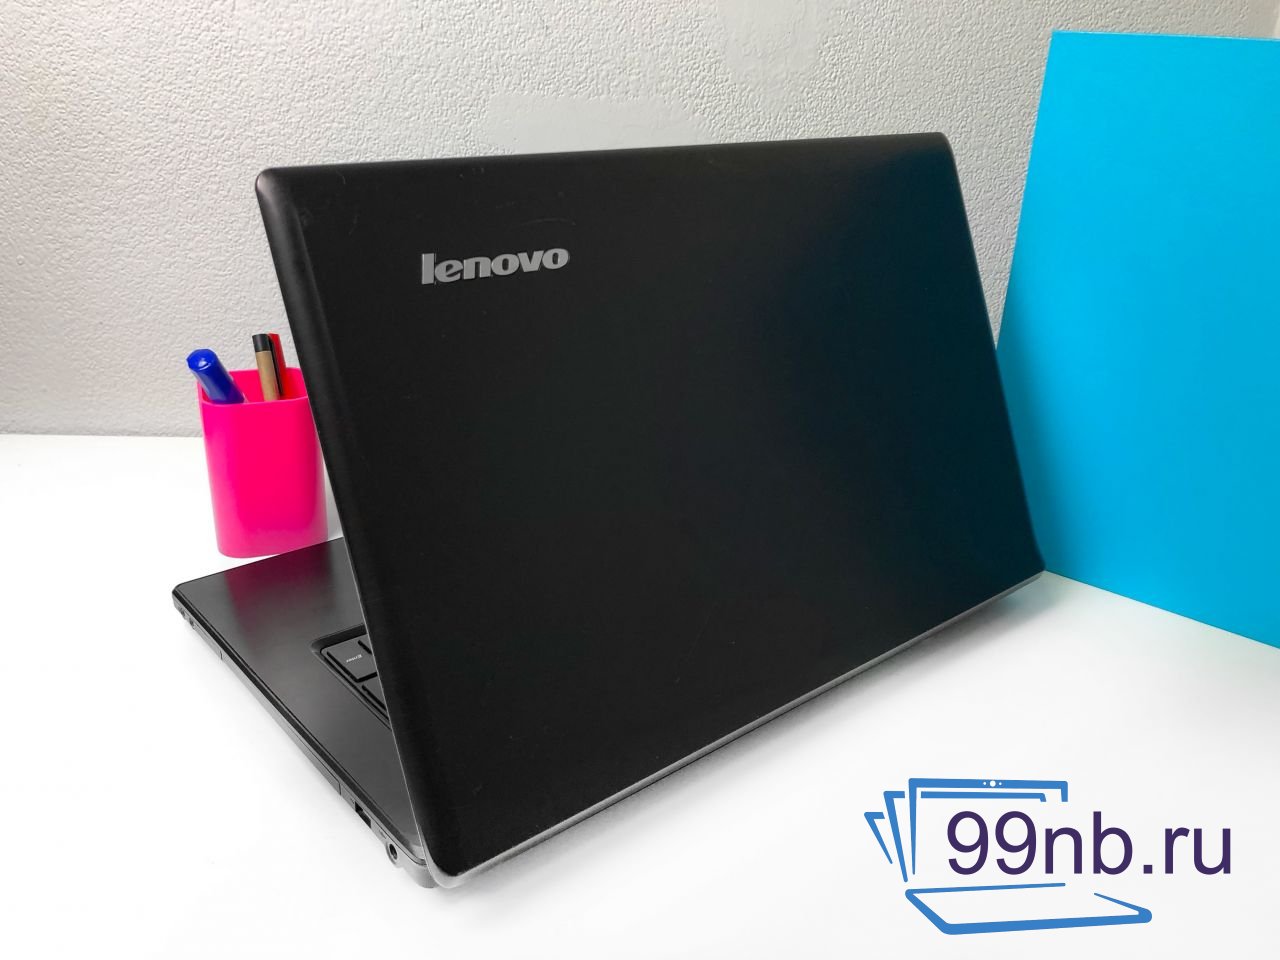  Ноутбук Lenovo для работы, фильмов, интернета 17.3	